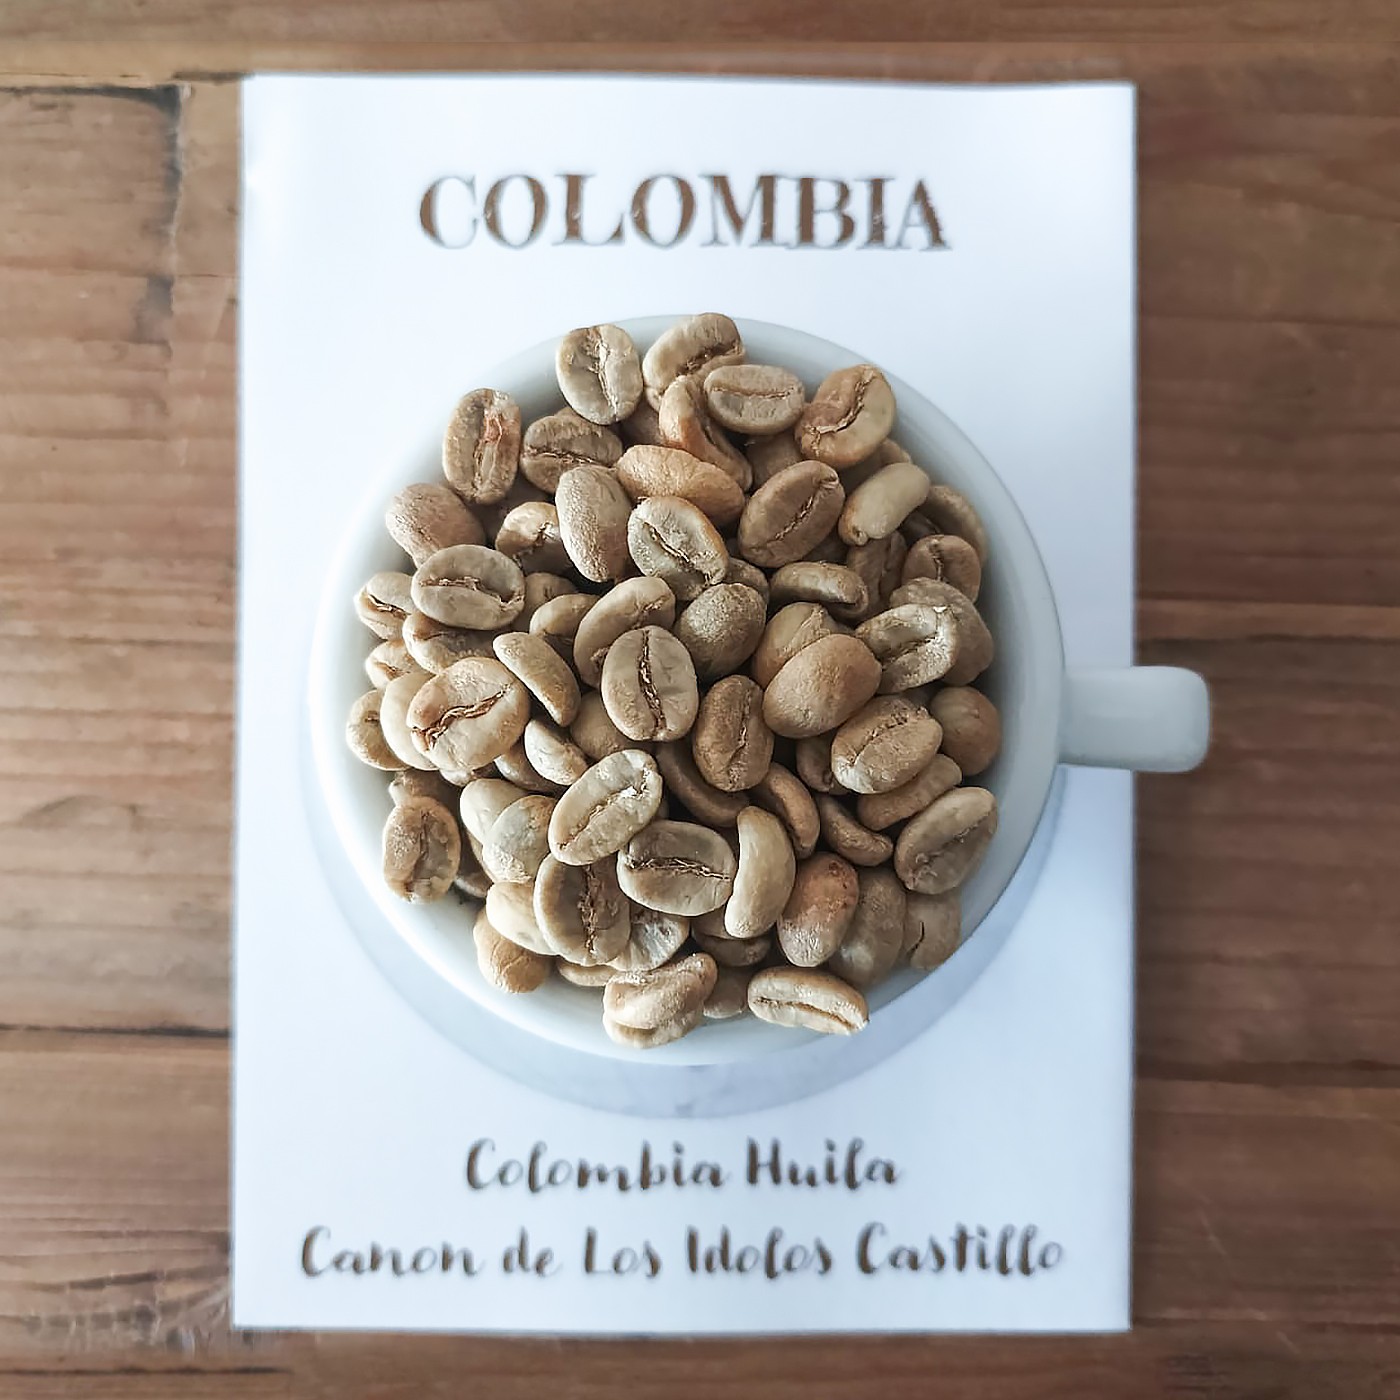 COLOMBIA CAÑÓN DE LOS IDOLOS Caffè Fusari